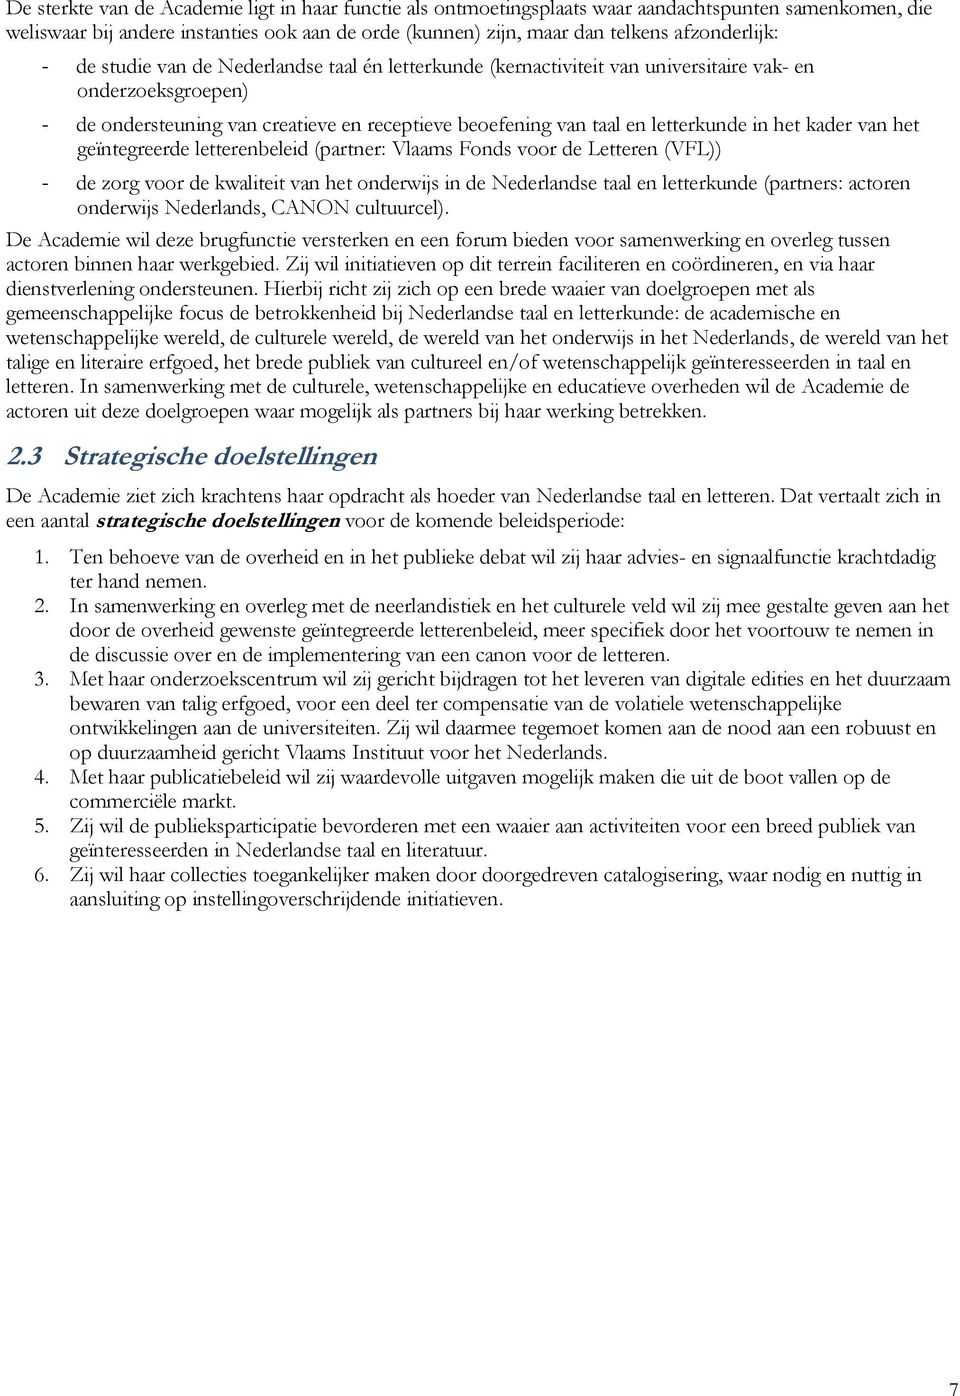 letterkunde in het kader van het geïntegreerde letterenbeleid (partner: Vlaams Fonds voor de Letteren (VFL)) - de zorg voor de kwaliteit van het onderwijs in de Nederlandse taal en letterkunde